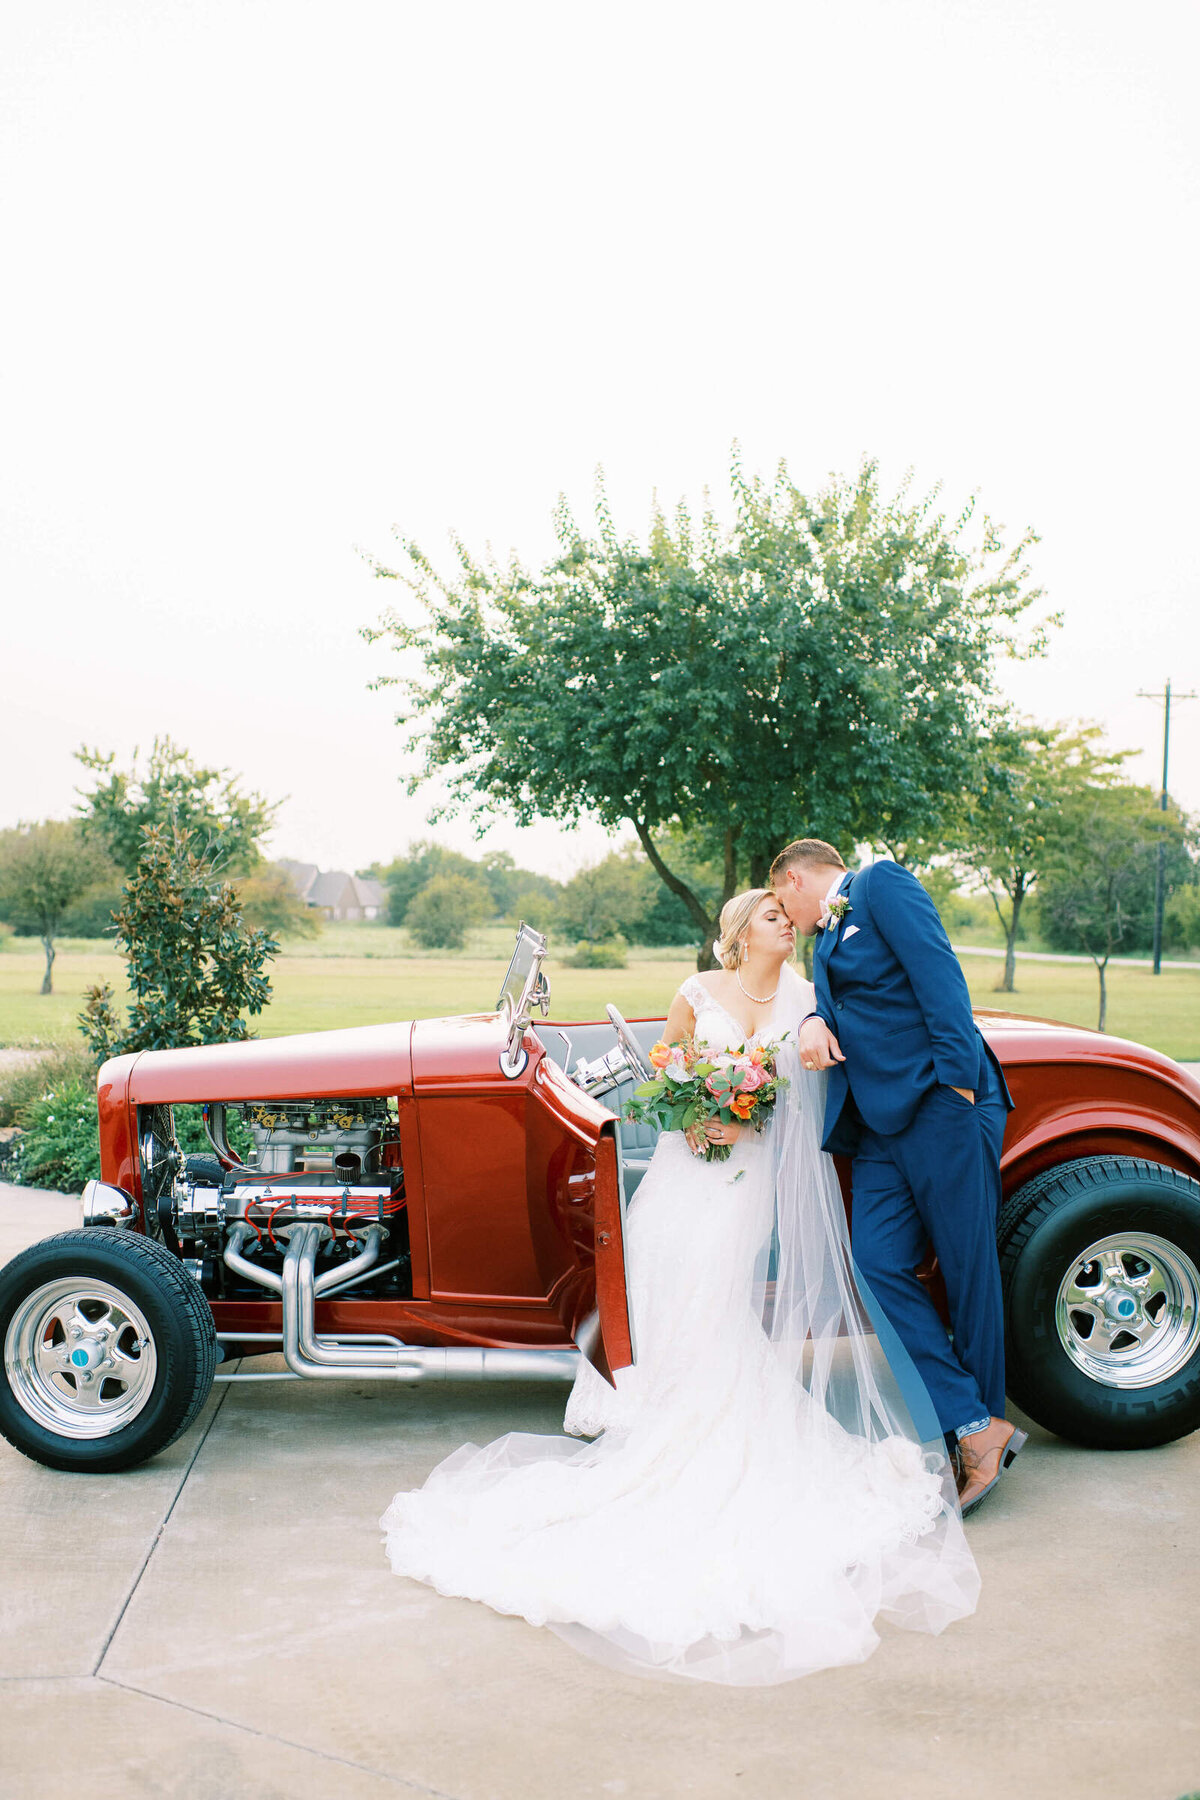 Bride and groom kiss in fancy old getaway car